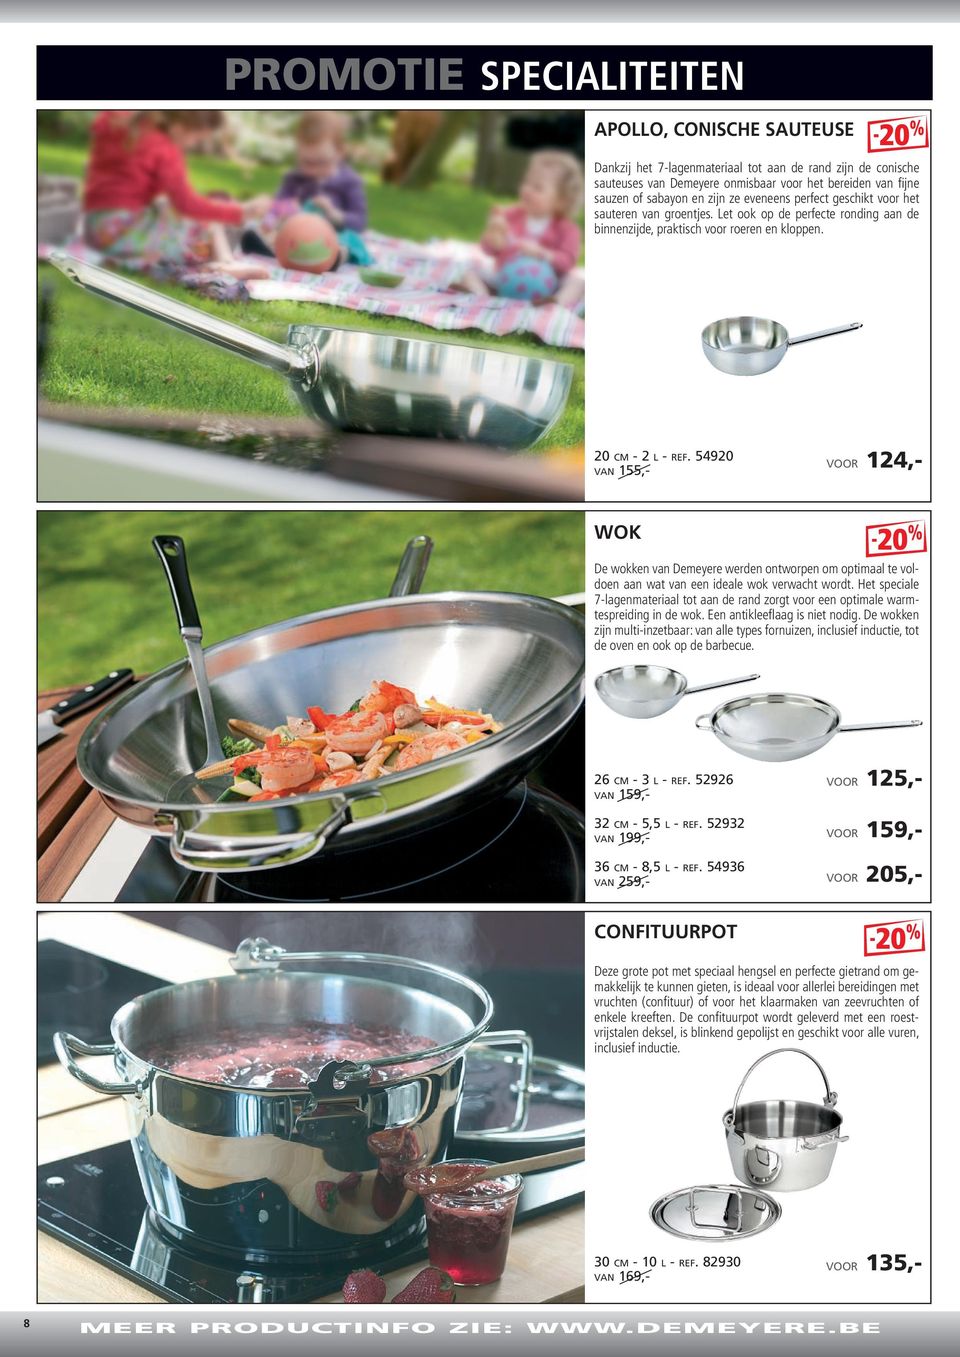 20-2L155,- 54920 124,- wok De wokken Demeyere werden ontworpen om optimaal te voldoen aan wat een ideale wok verwacht wordt.